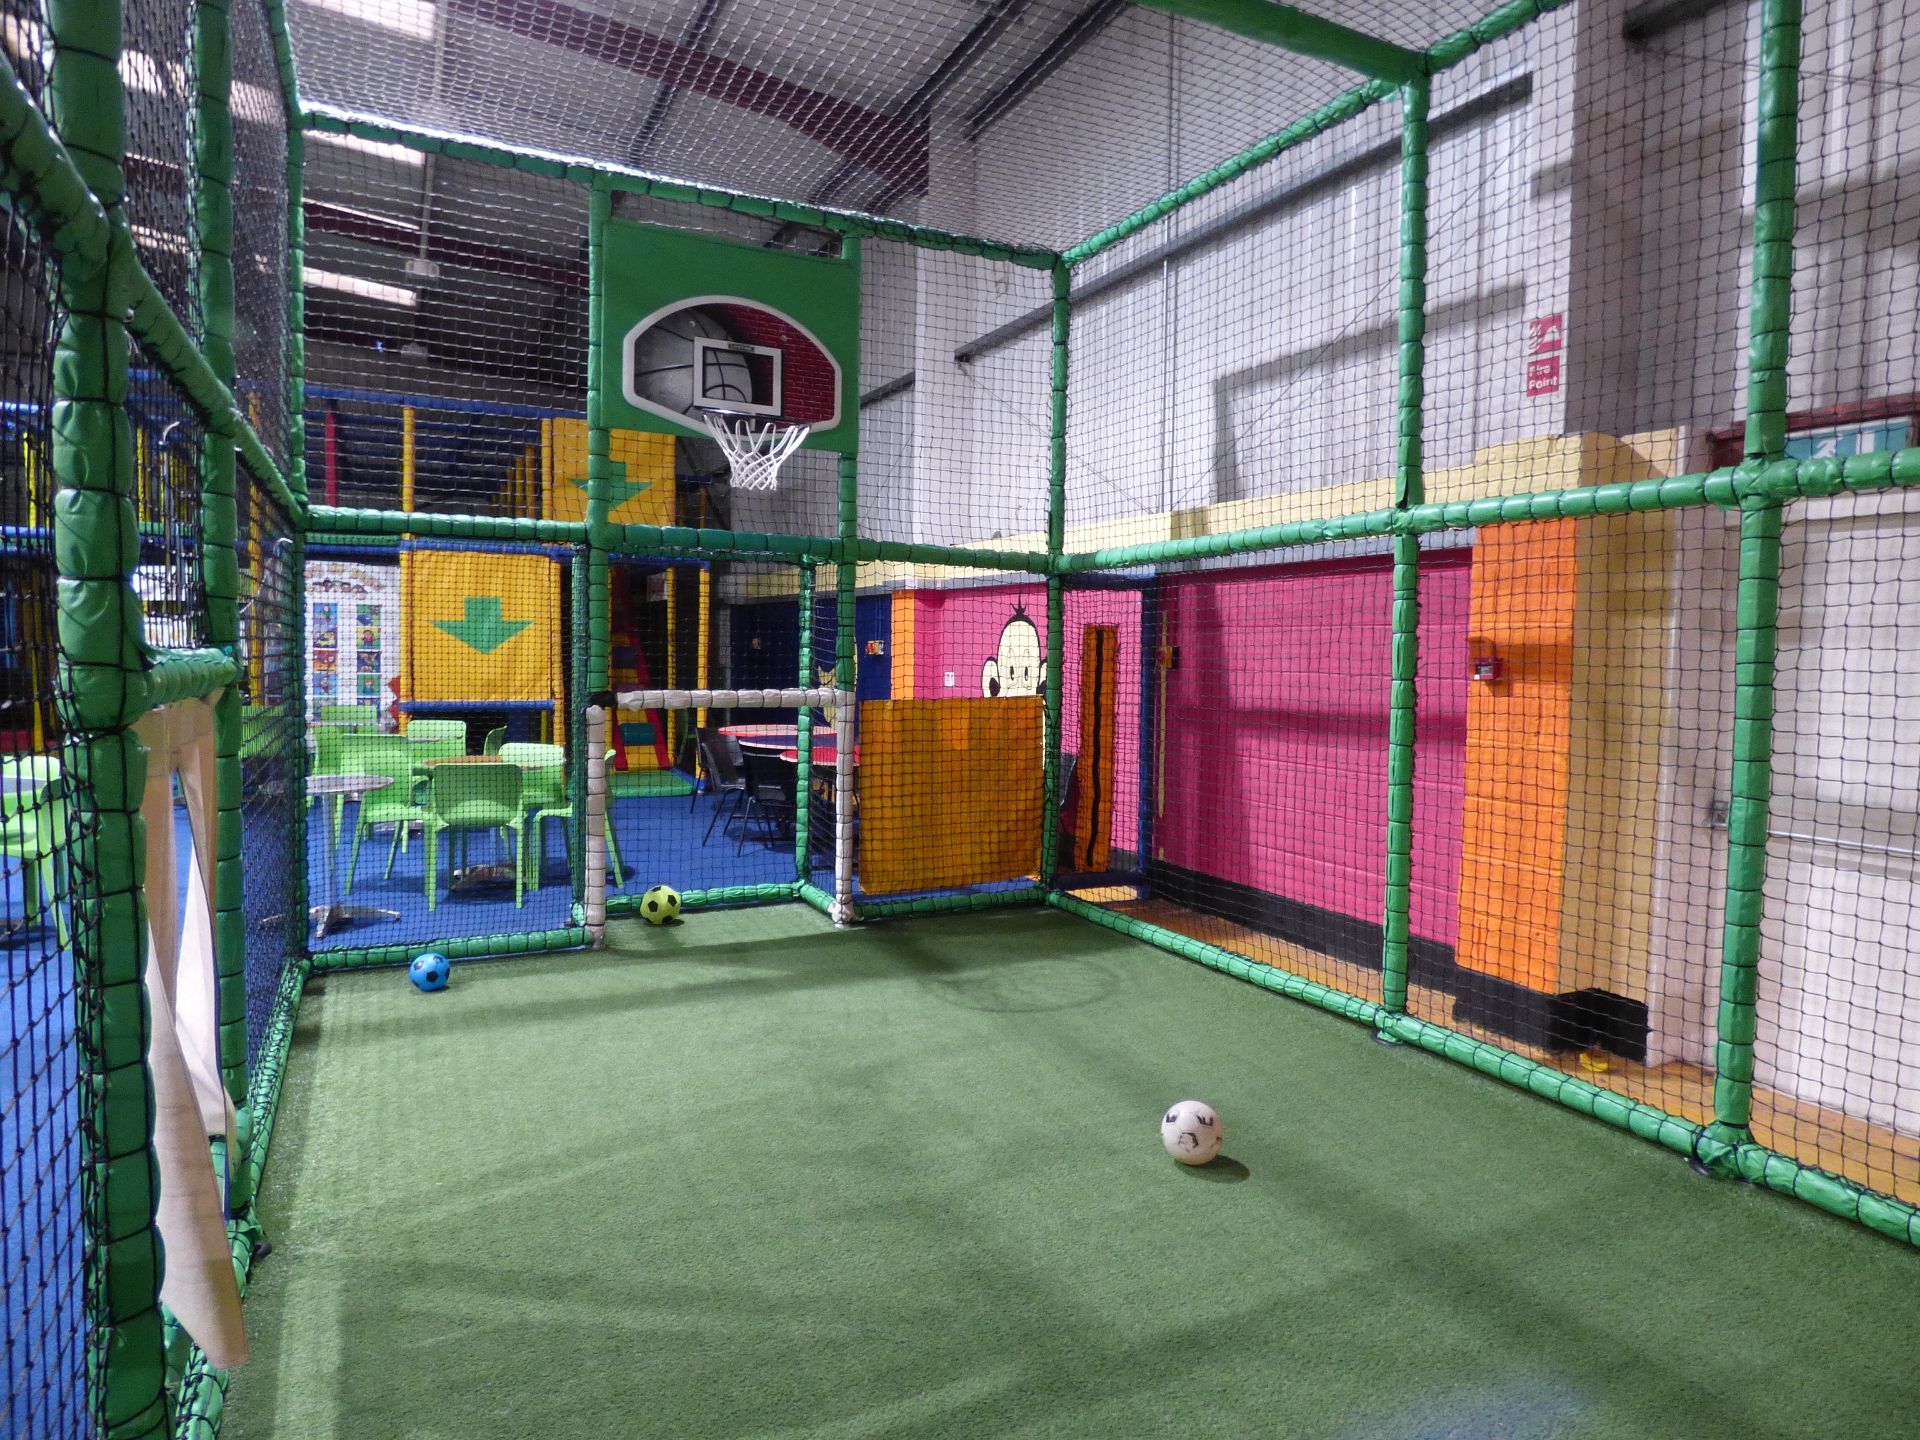 Football/Netball (Basketball) Court Area - Image 4 of 8